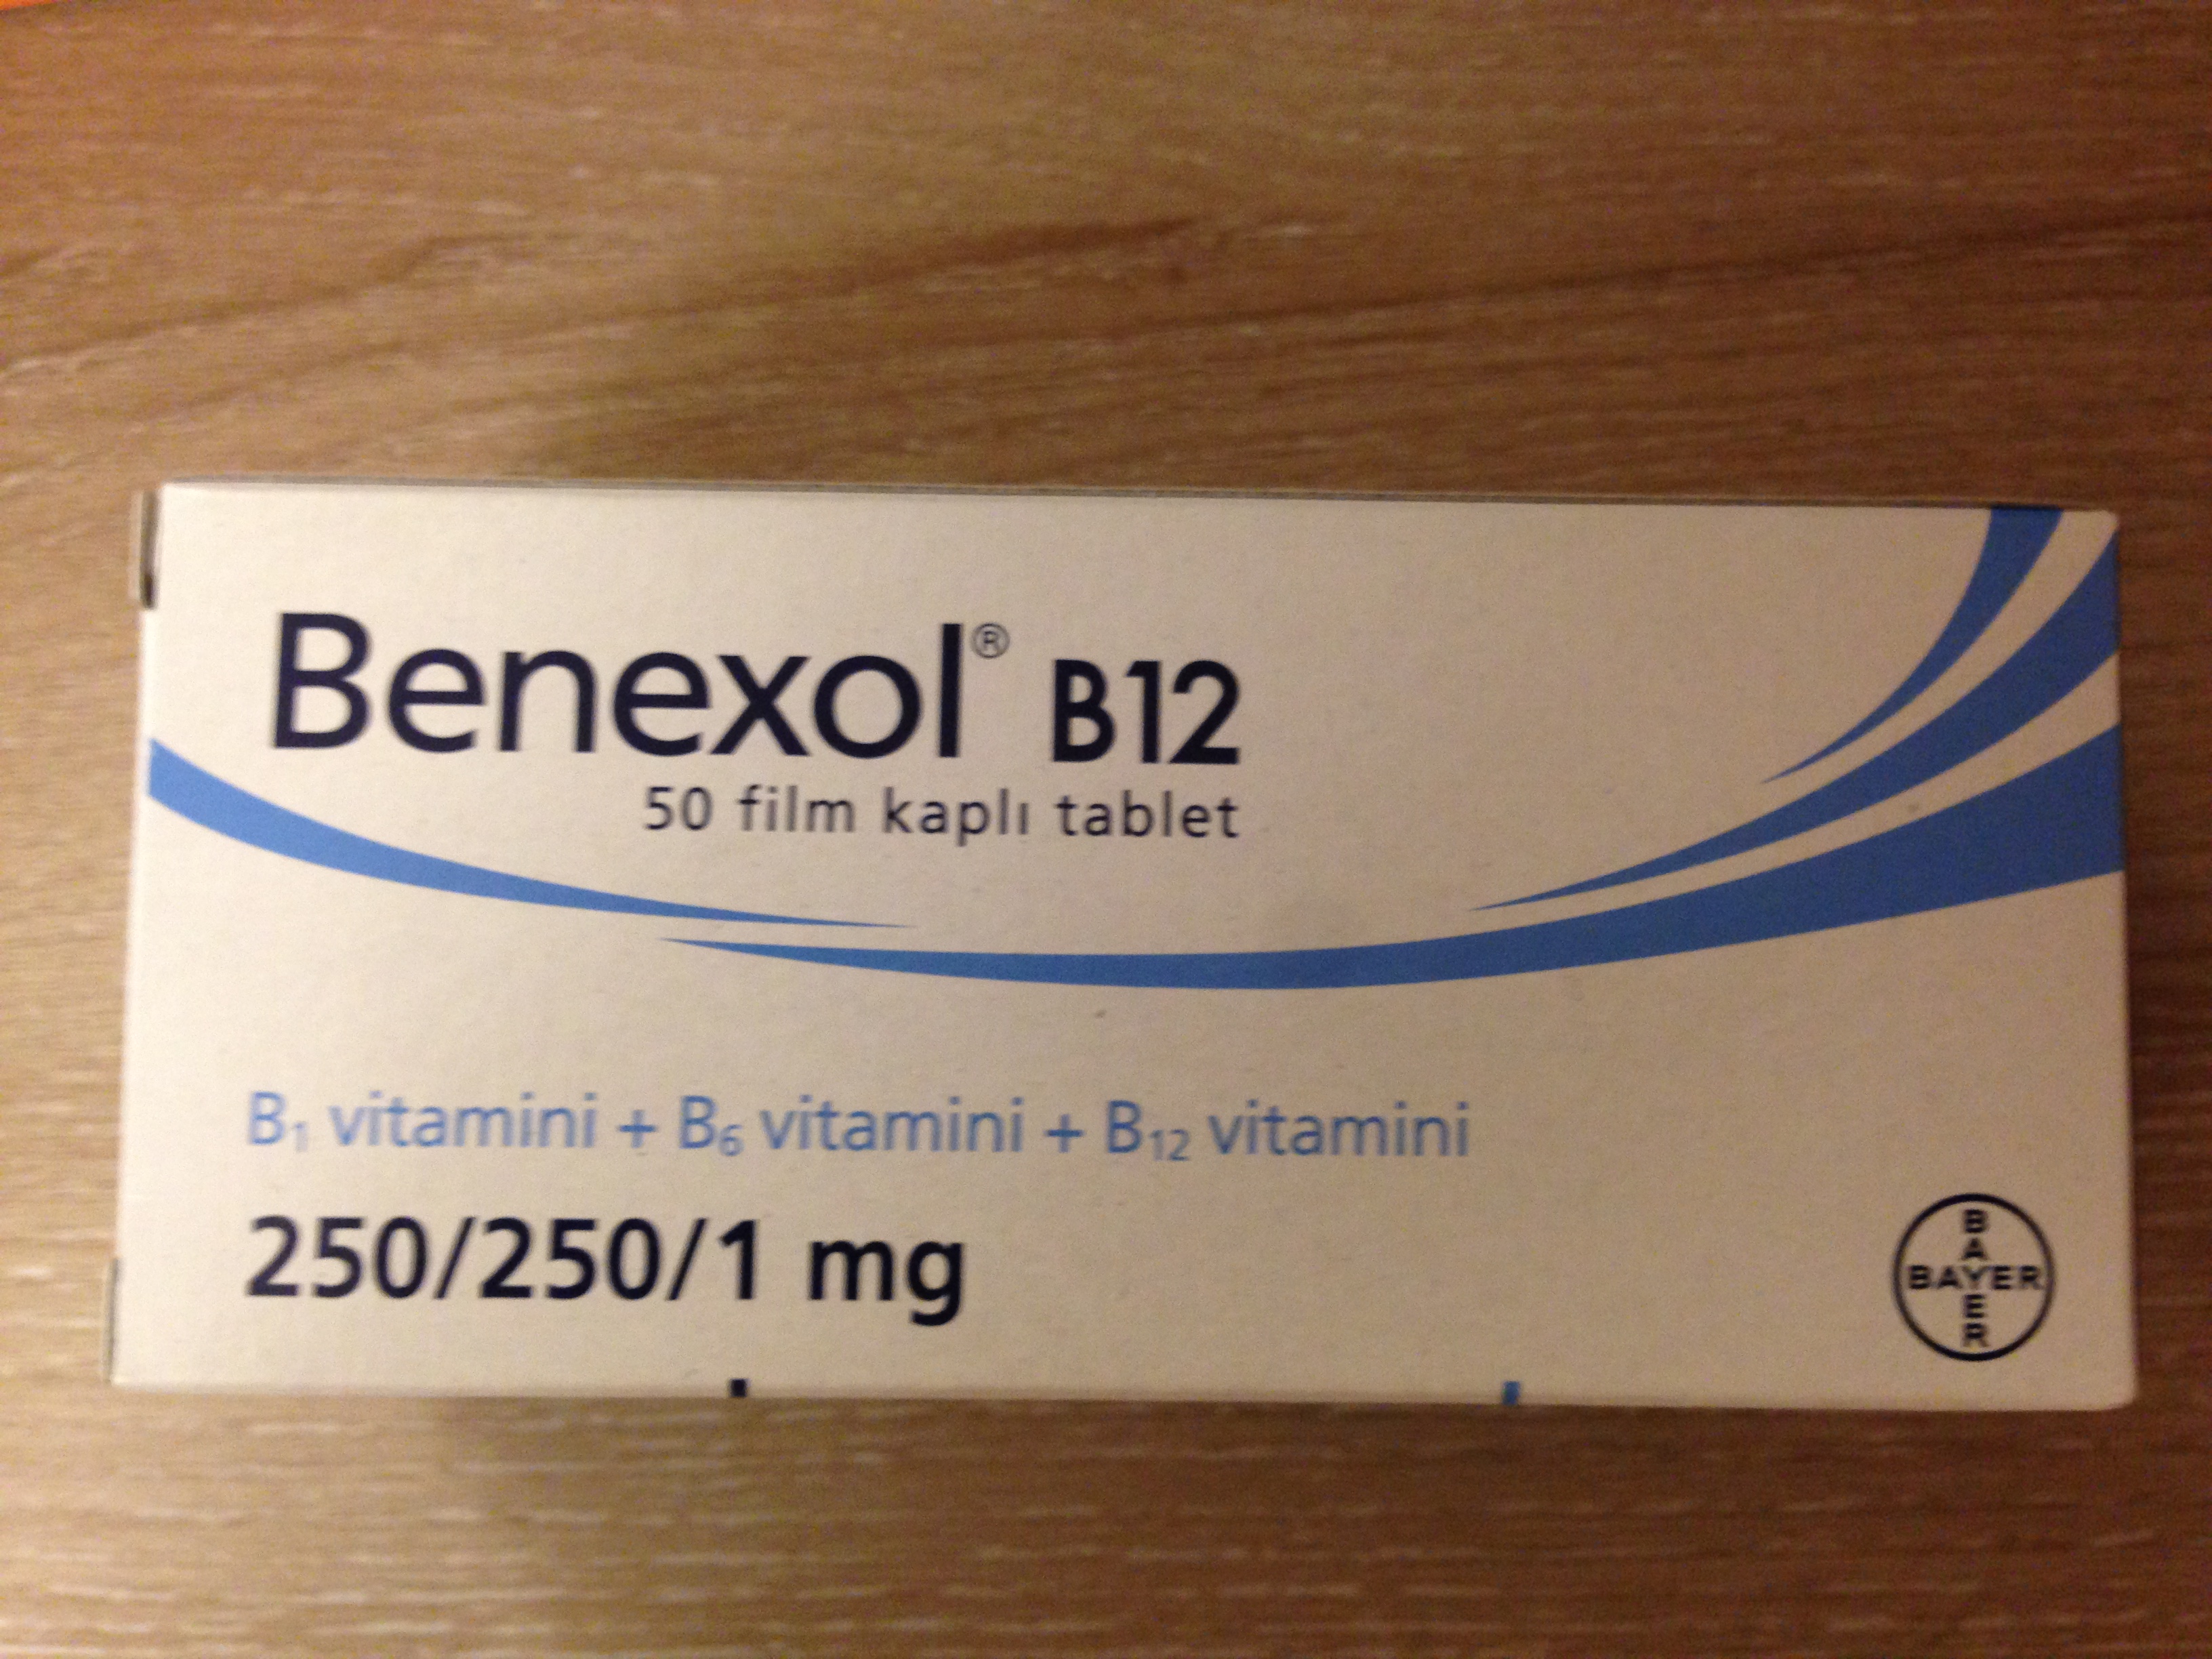 B 12sir b 12siq. Benexol b12. Benexol b12 в Турции. Витамины benexol b12. Benexol b12 fiyati.